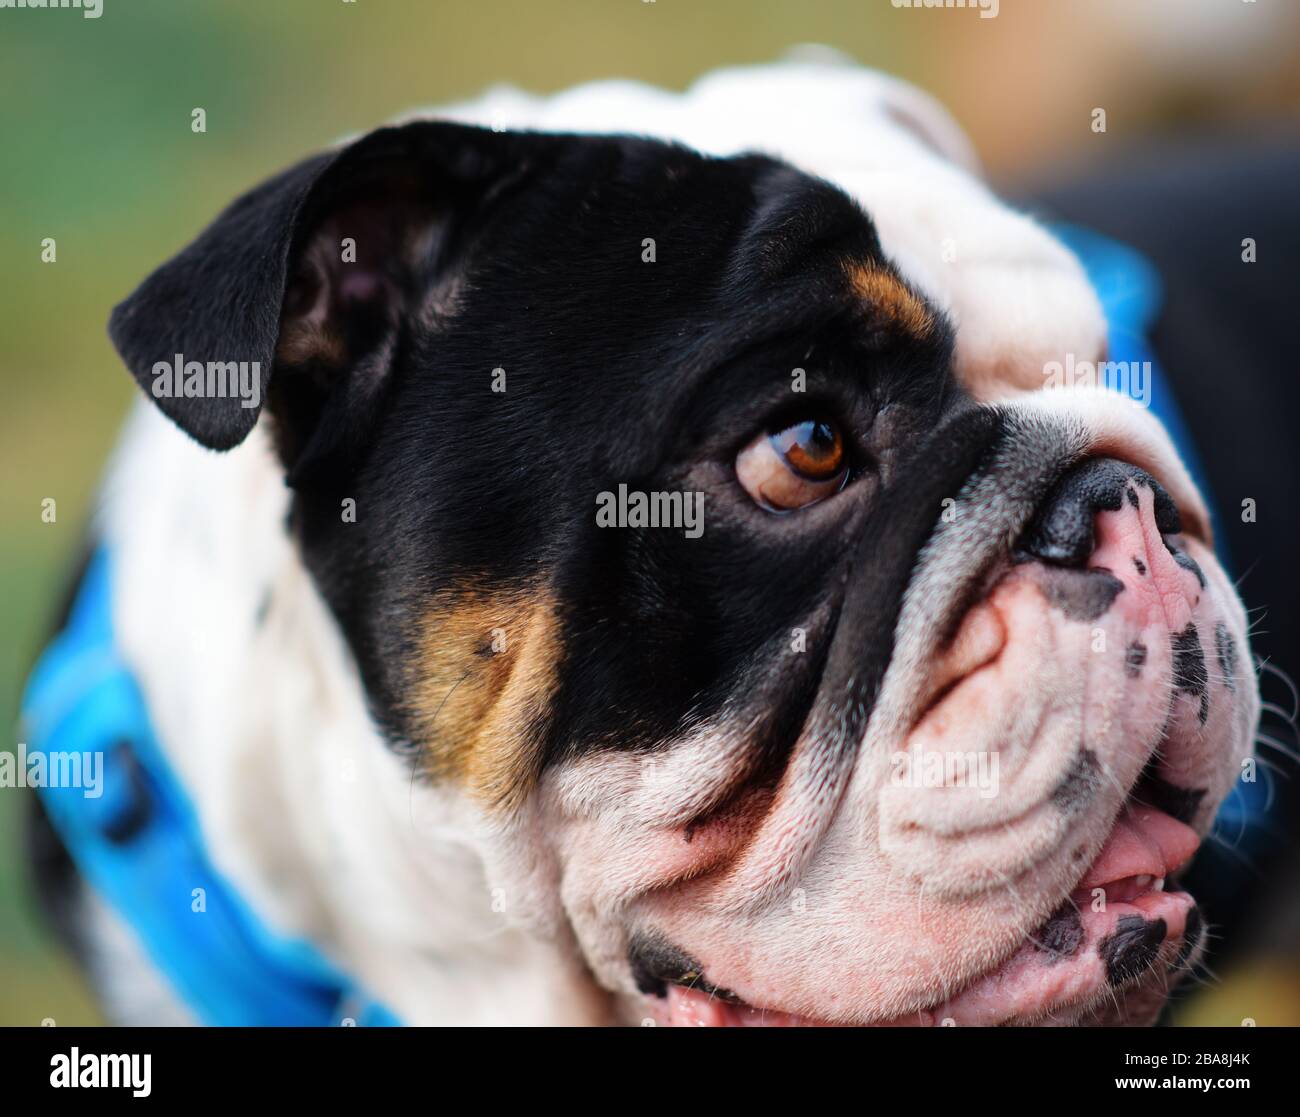 Gros plan sur le visage du chien noir et blanc anglais/britannique Bulldog regardant sur le côté Banque D'Images